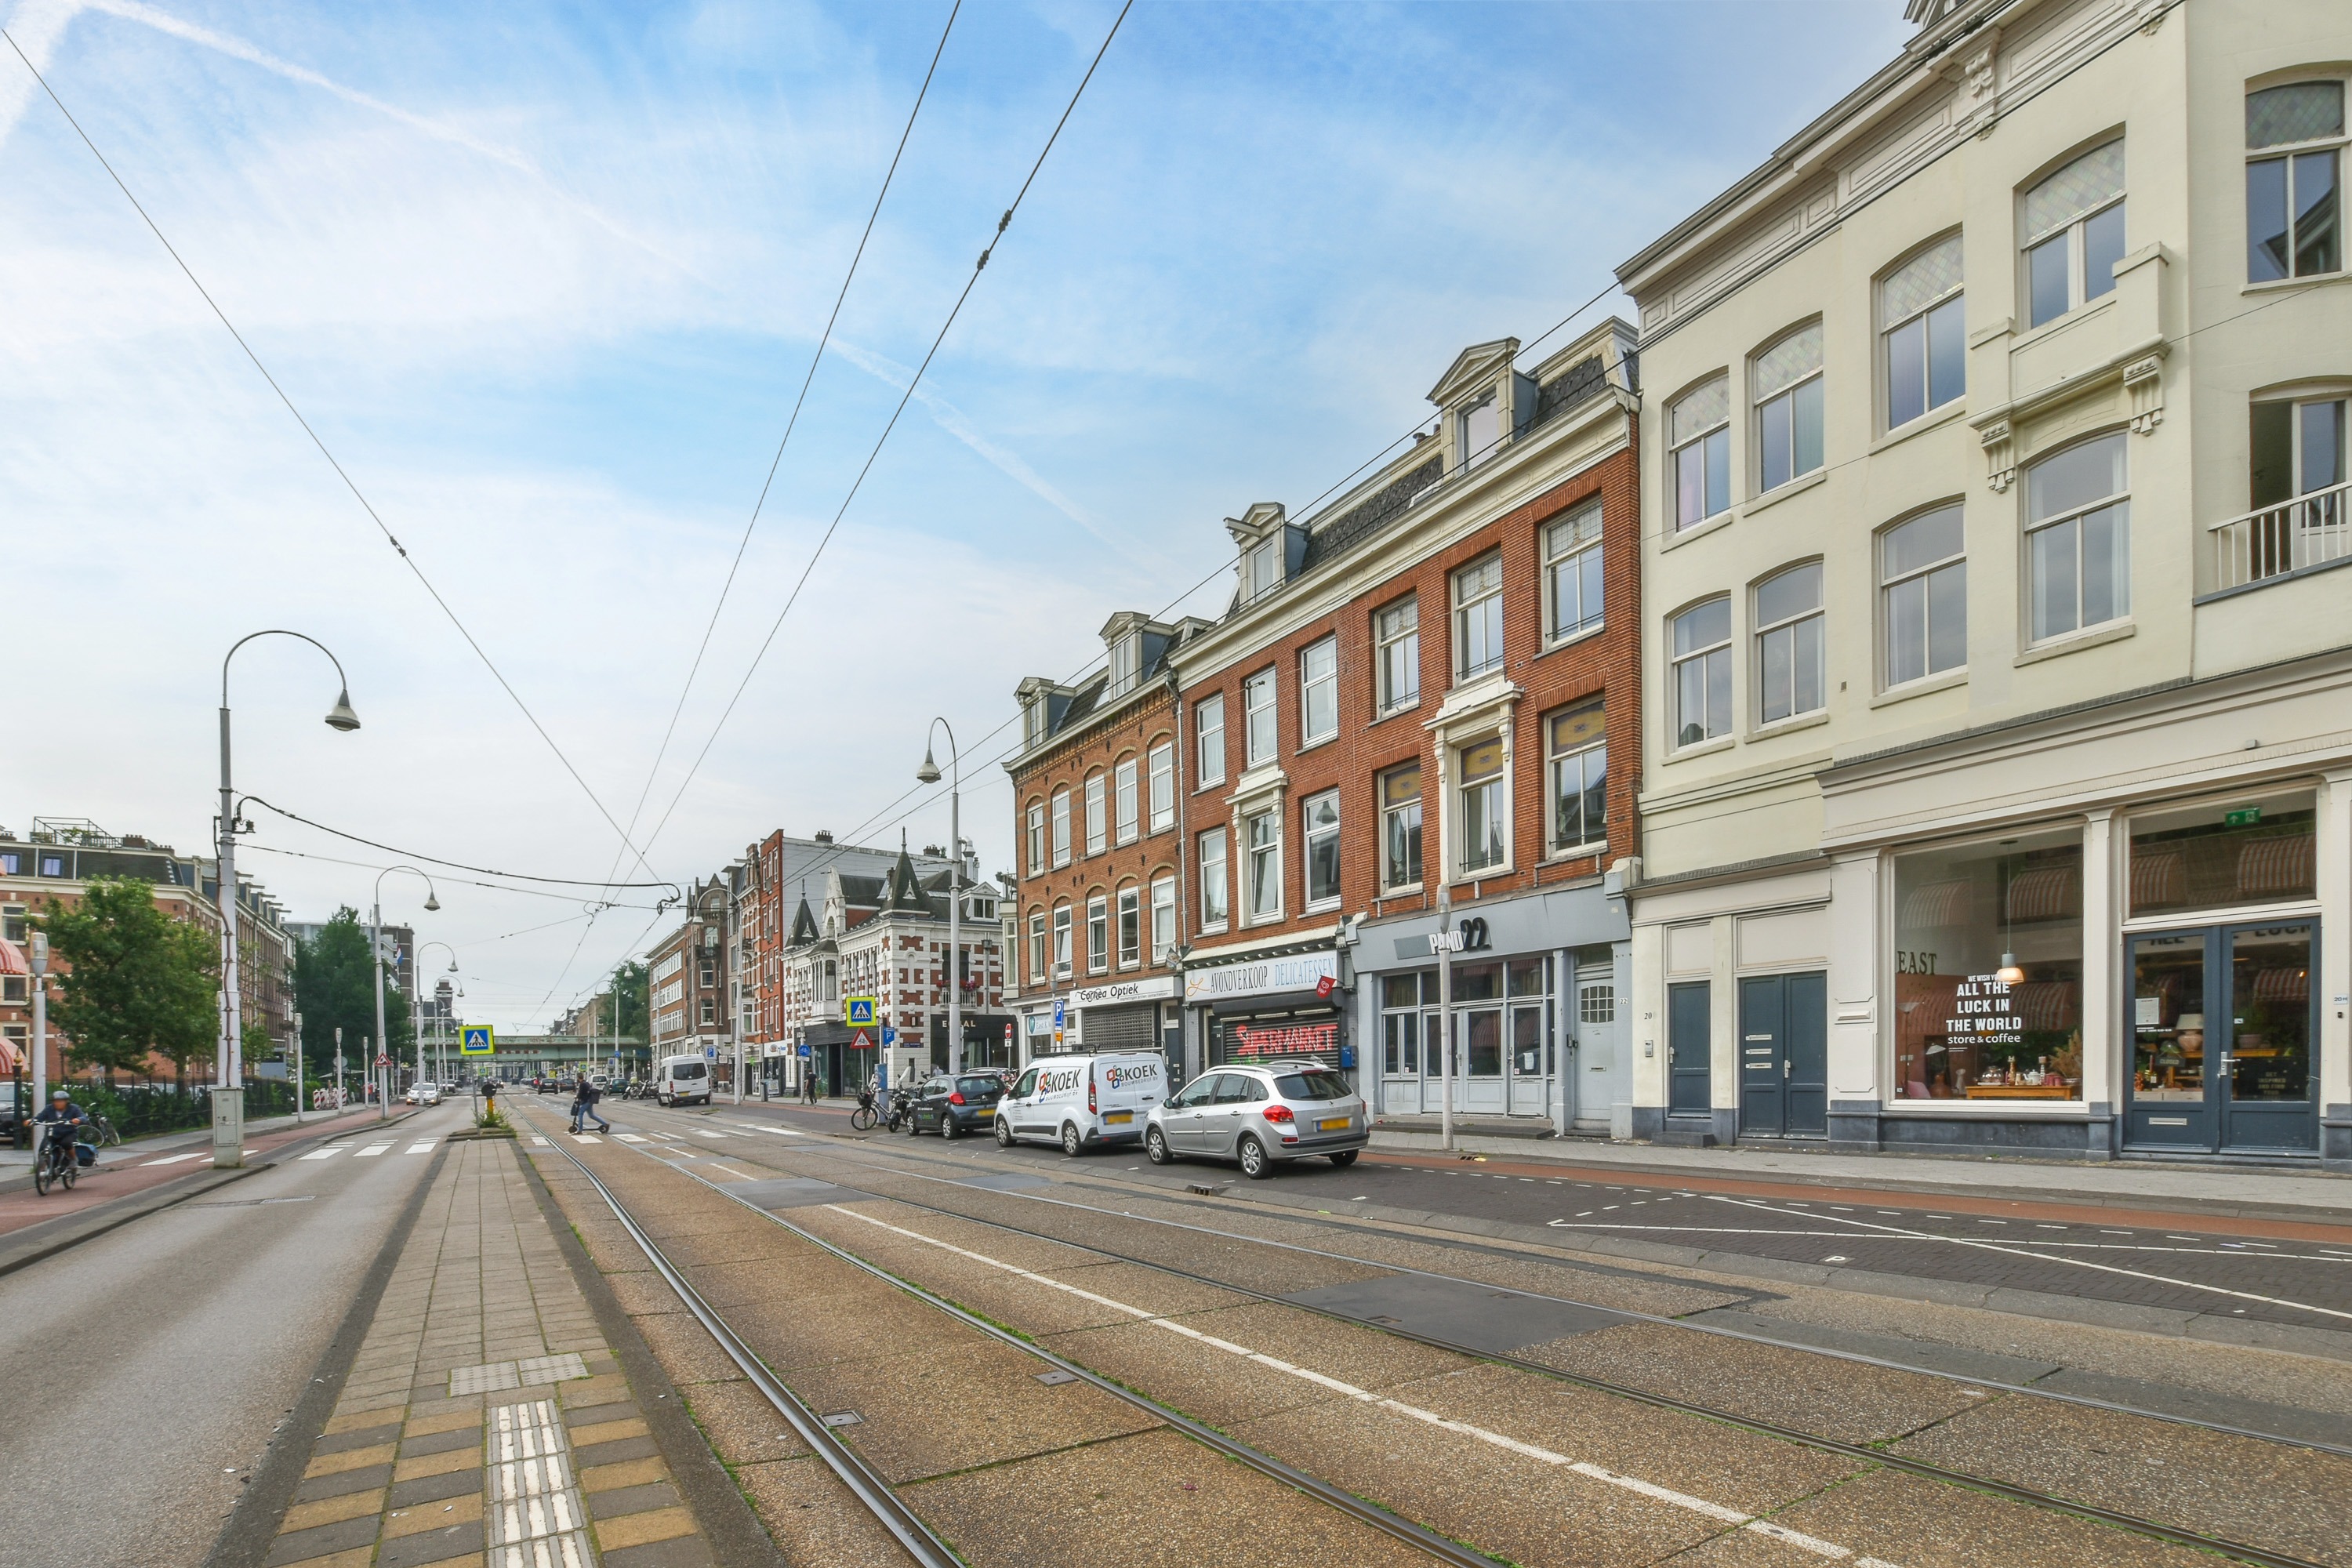 Woning / appartement - Amsterdam - Linnaeusstraat 22 1-2-3